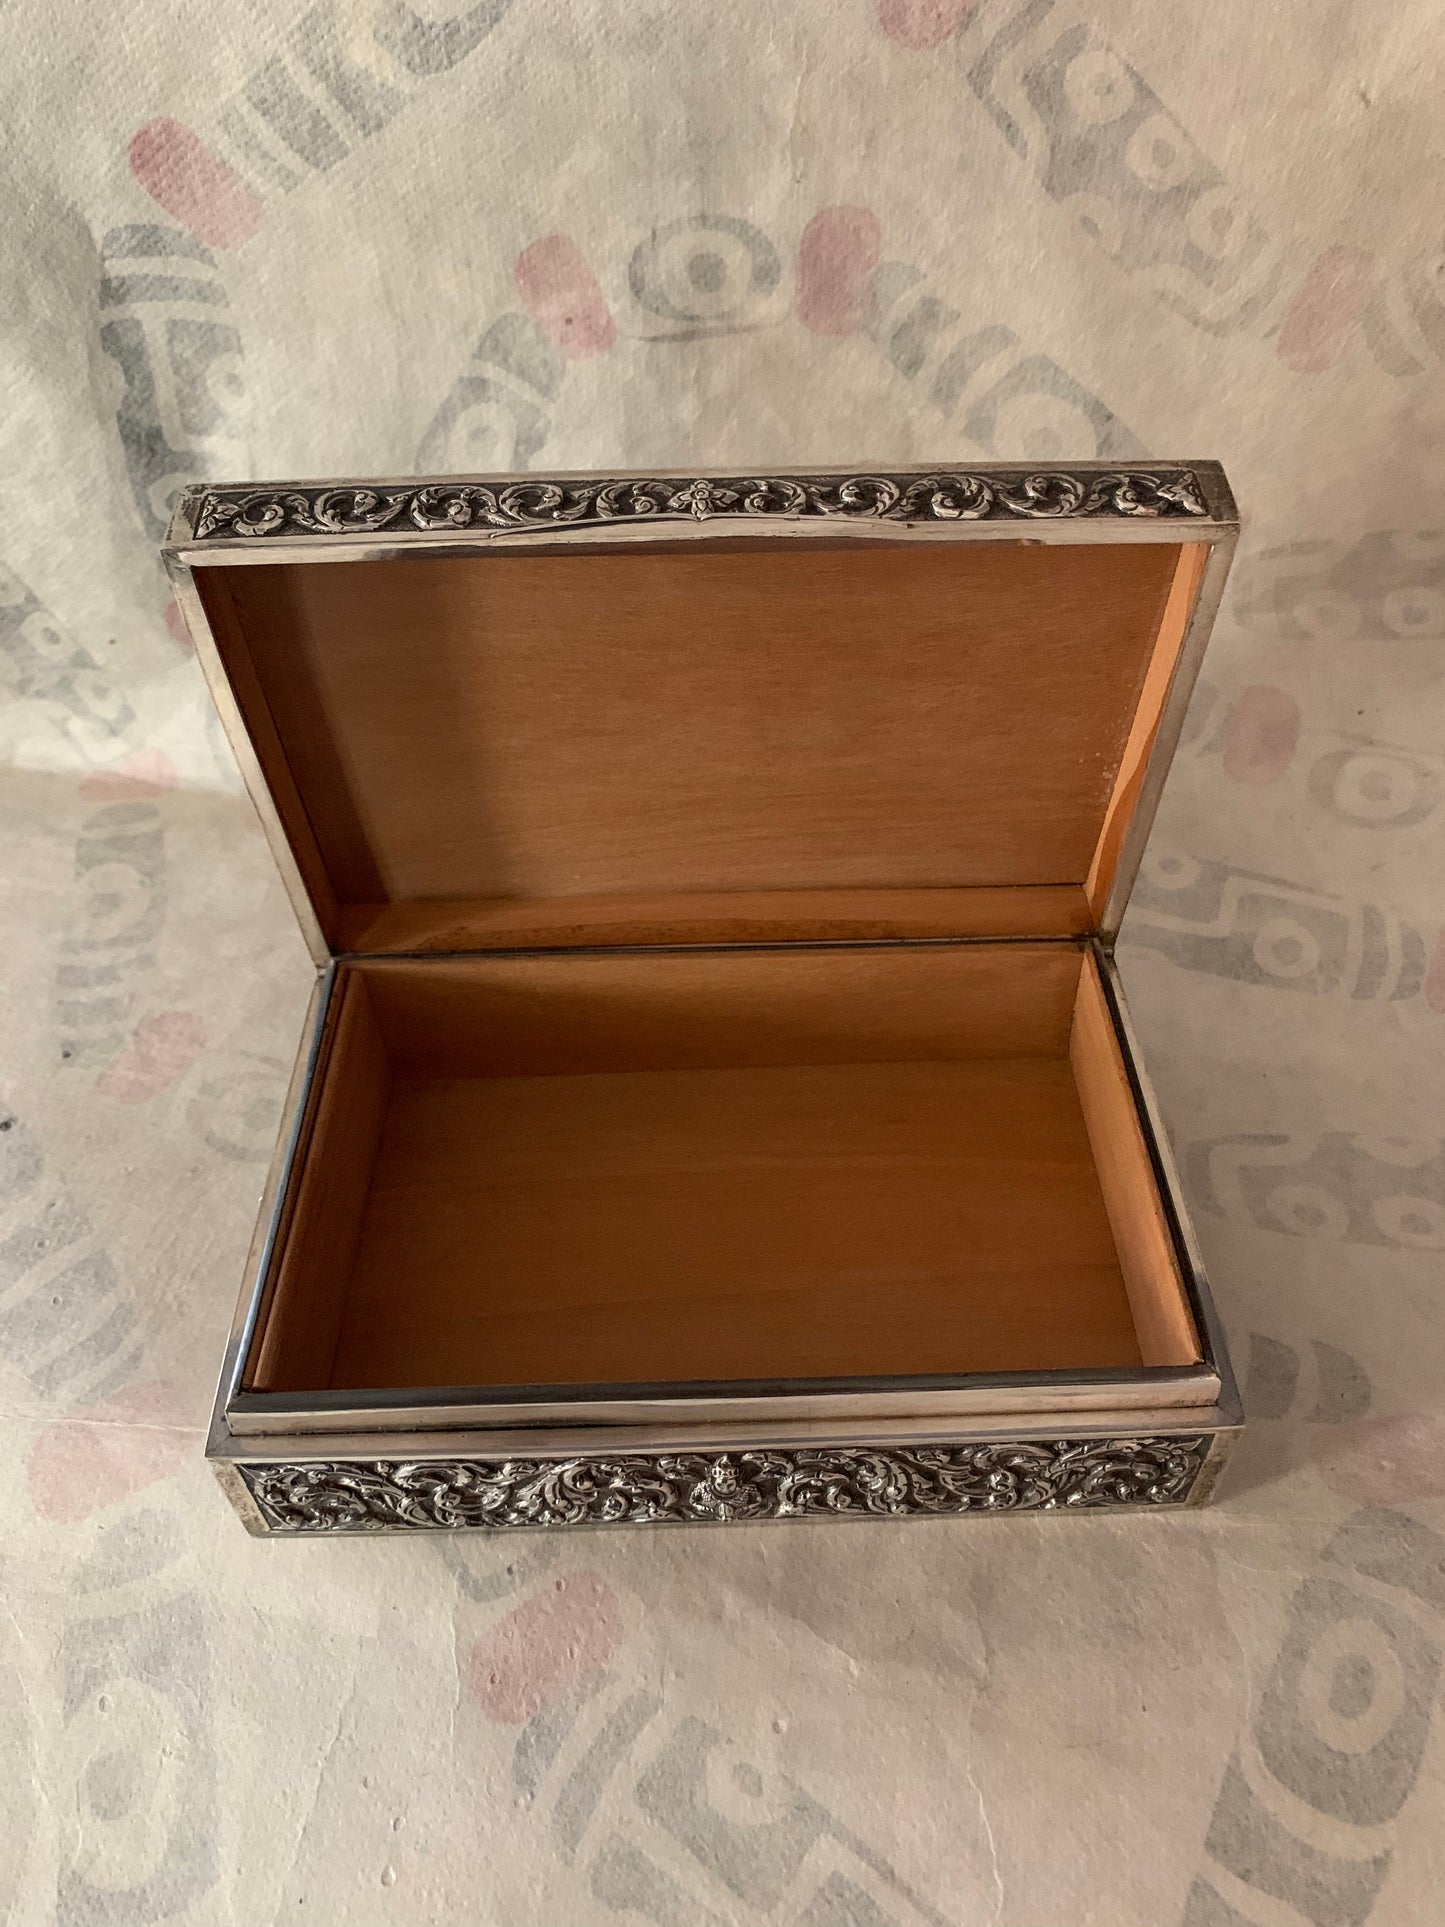 An antique Thai cigar silver box